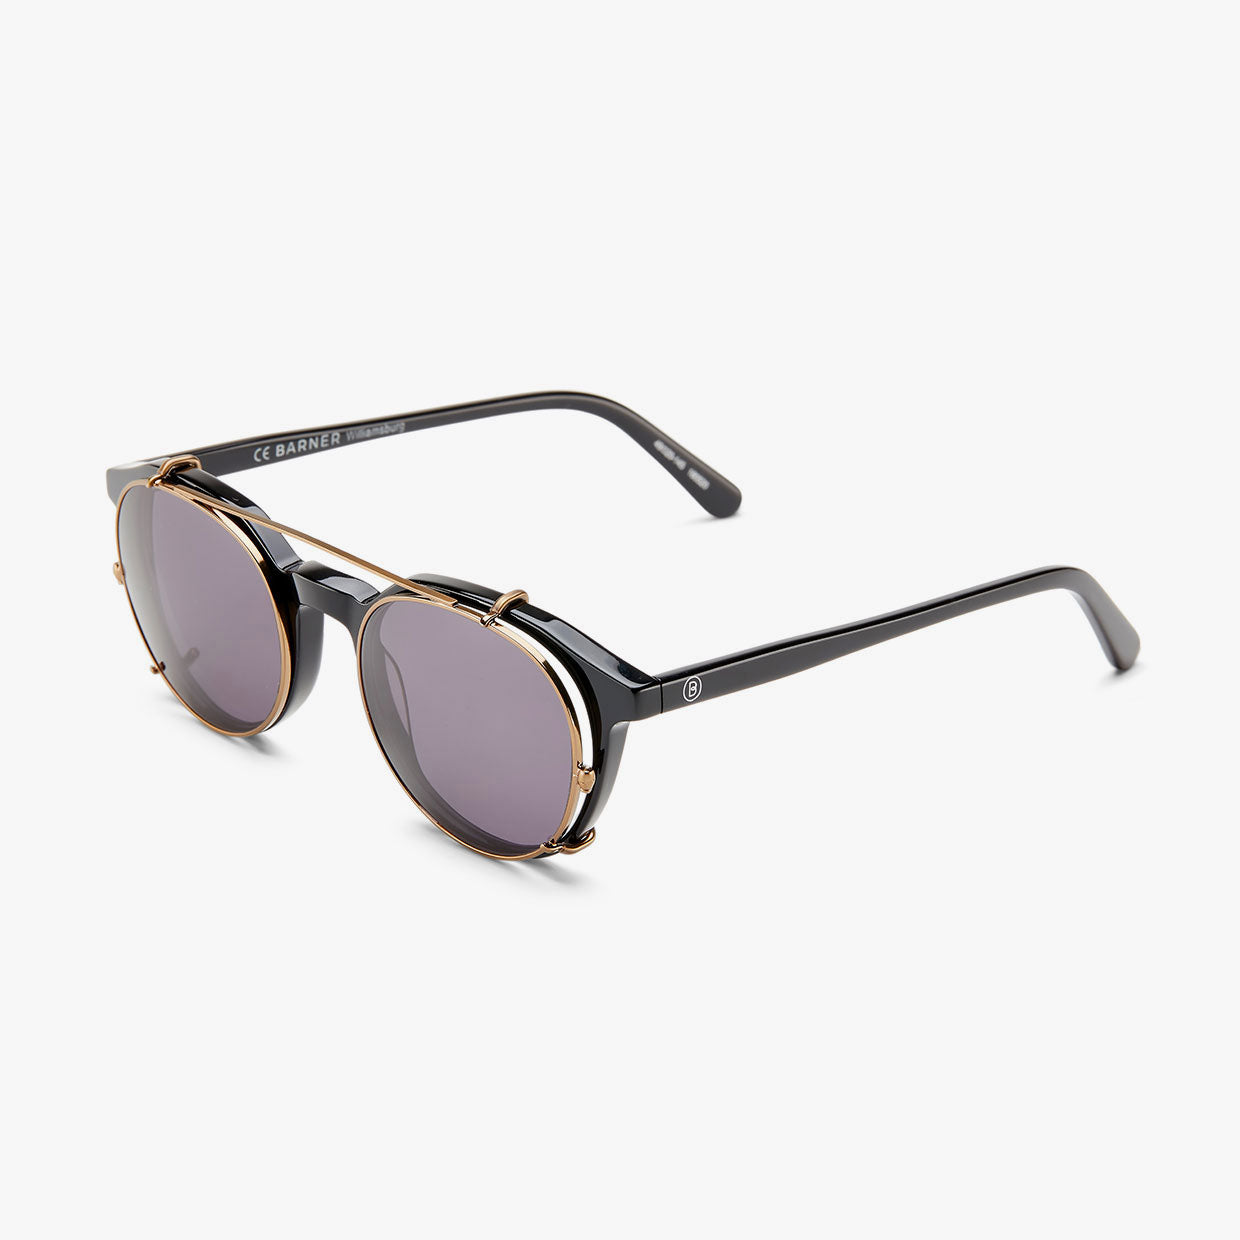 Clip Sunglasses - Williamburg Collection | BARNER